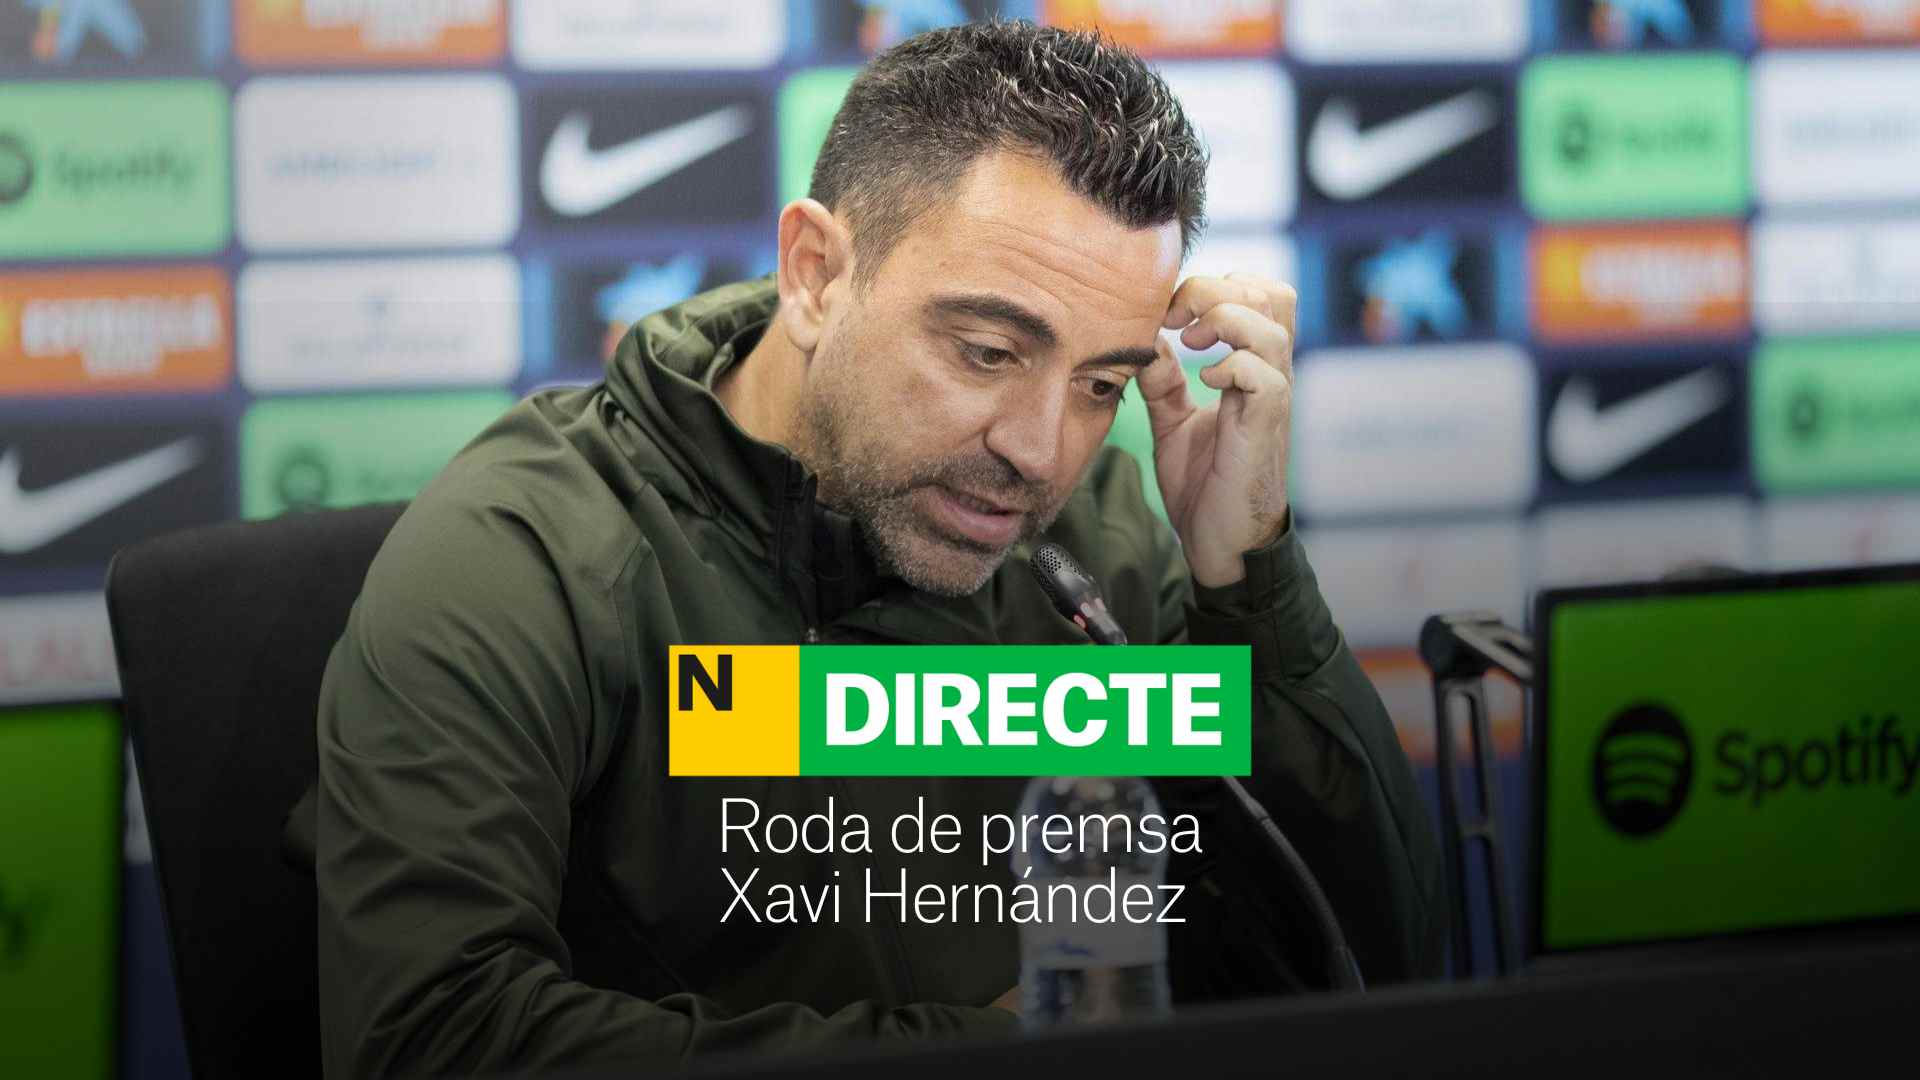 Roda de premsa de Xavi Hernández, Directe | Xavi: "Només em queda acceptar la decisió del President"